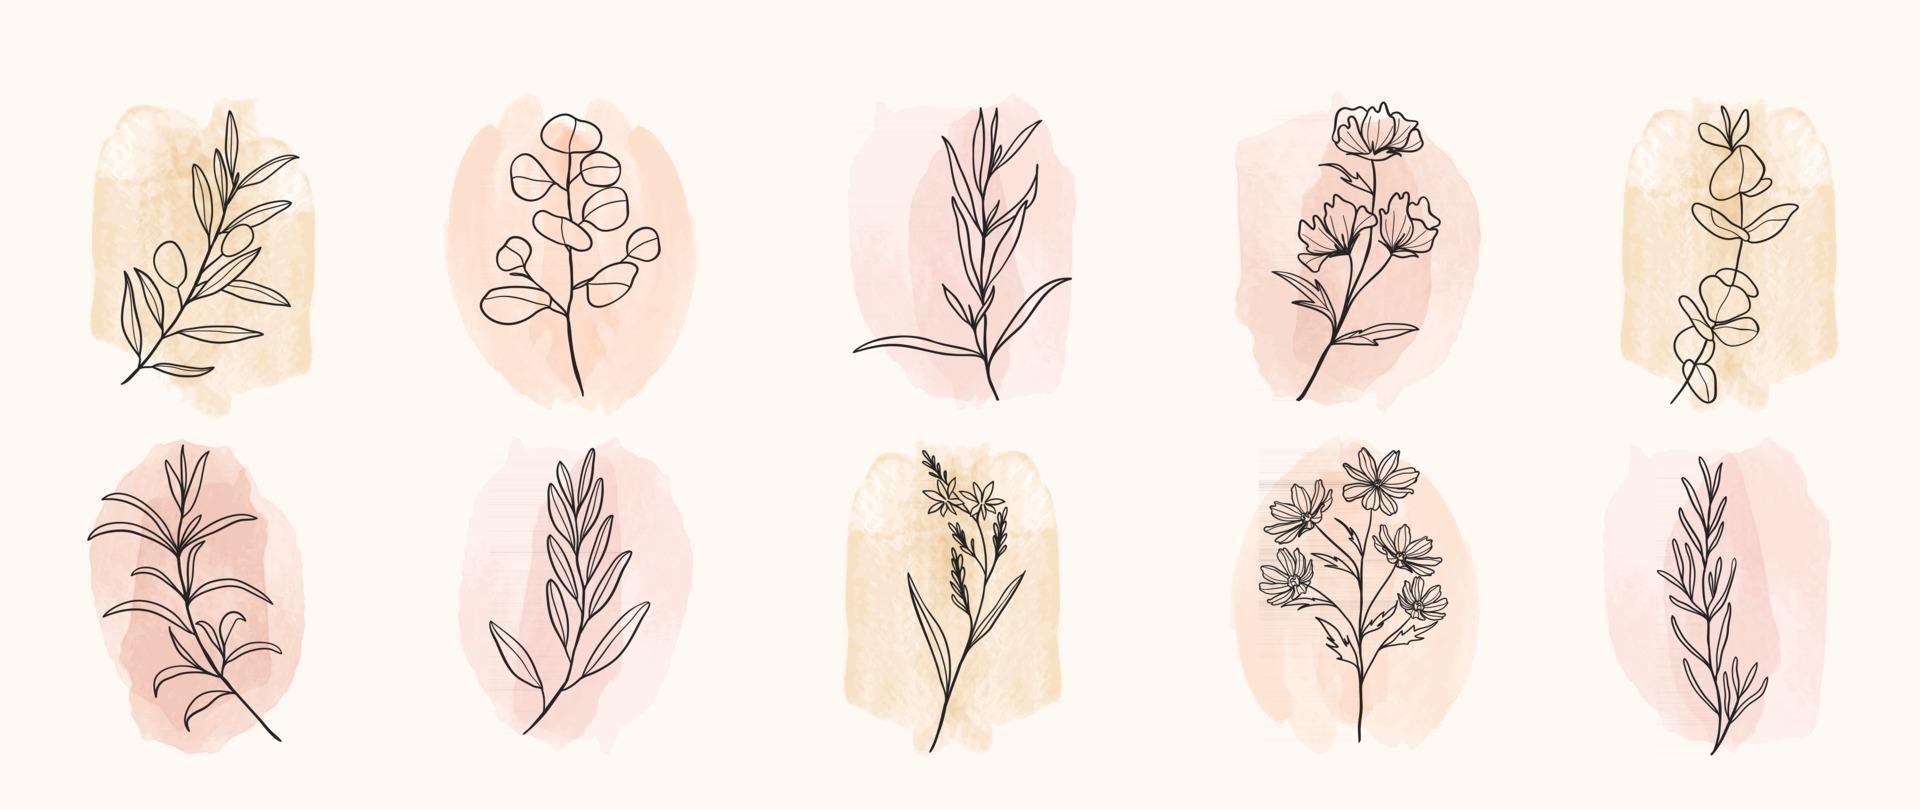 minimales botanisches Handzeichnungsdesign für Logo und Hochzeitseinladung. florale Strichzeichnungen. Blumen und Blätter auf Aquarellhintergrund-Designsammlung für Blumensträußedekoration, einladen, Verpackungsdesign vektor